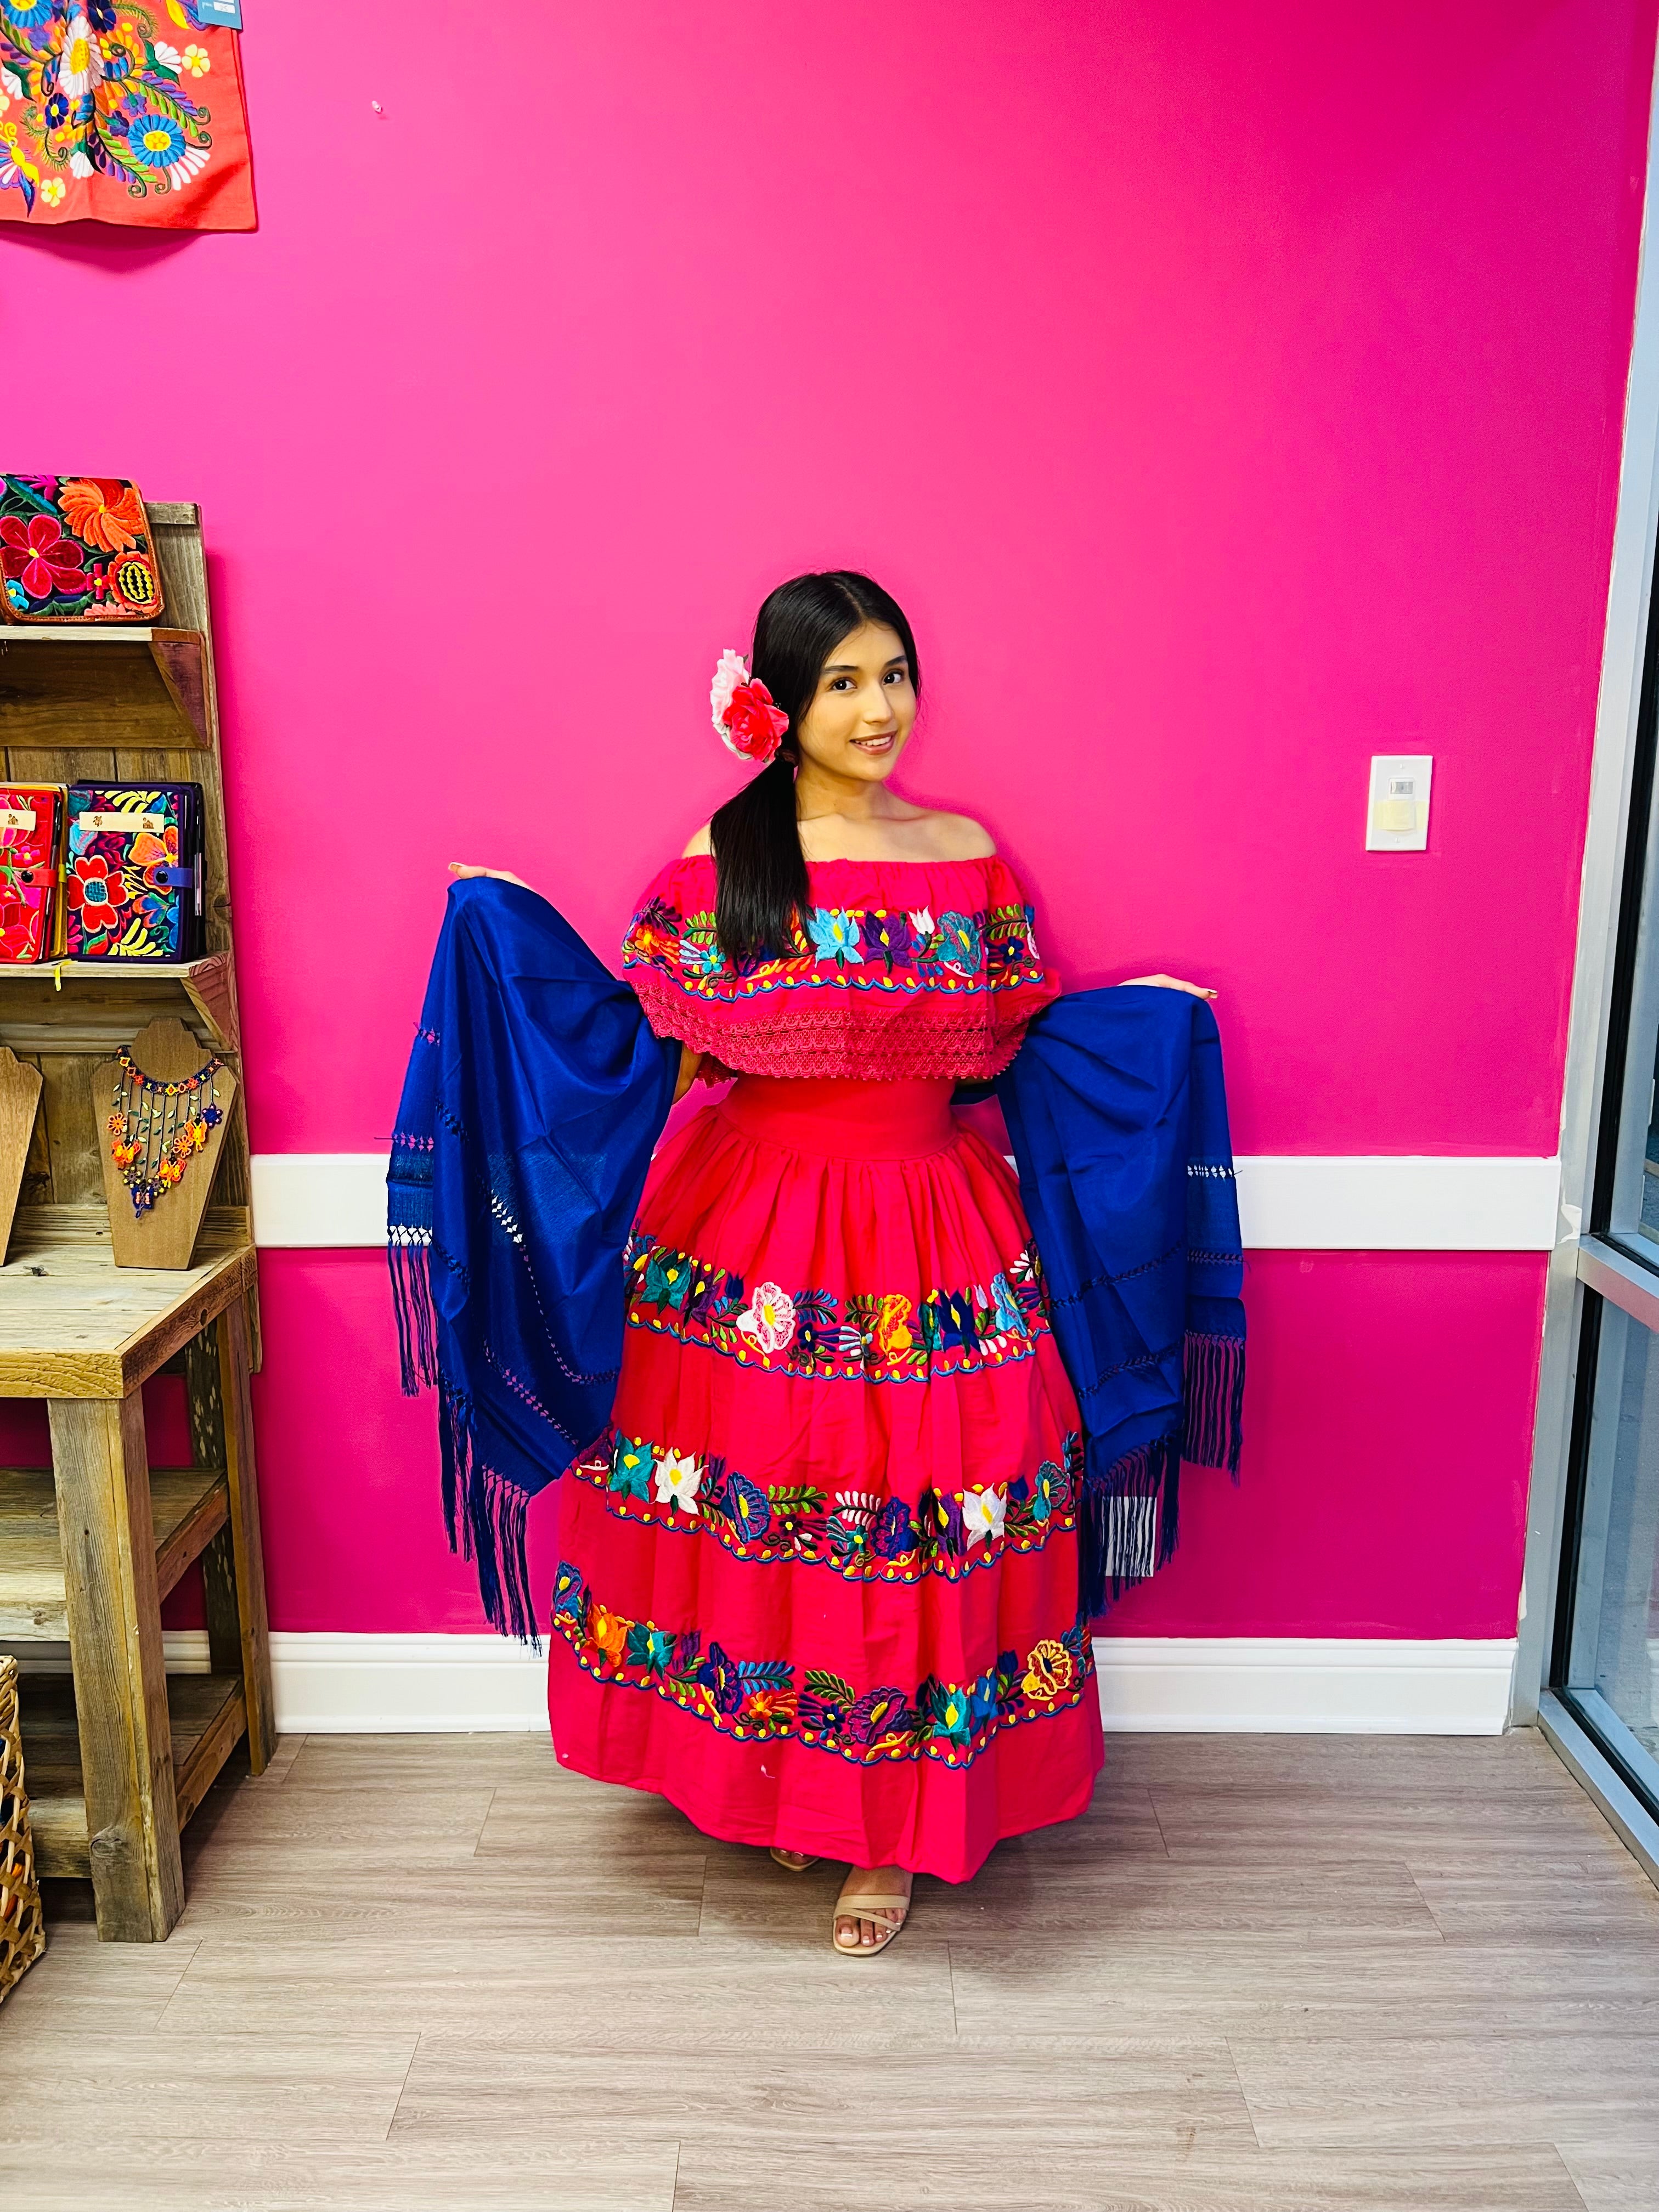 Baila Dress Beige Que Bonito Mexican and Fashion